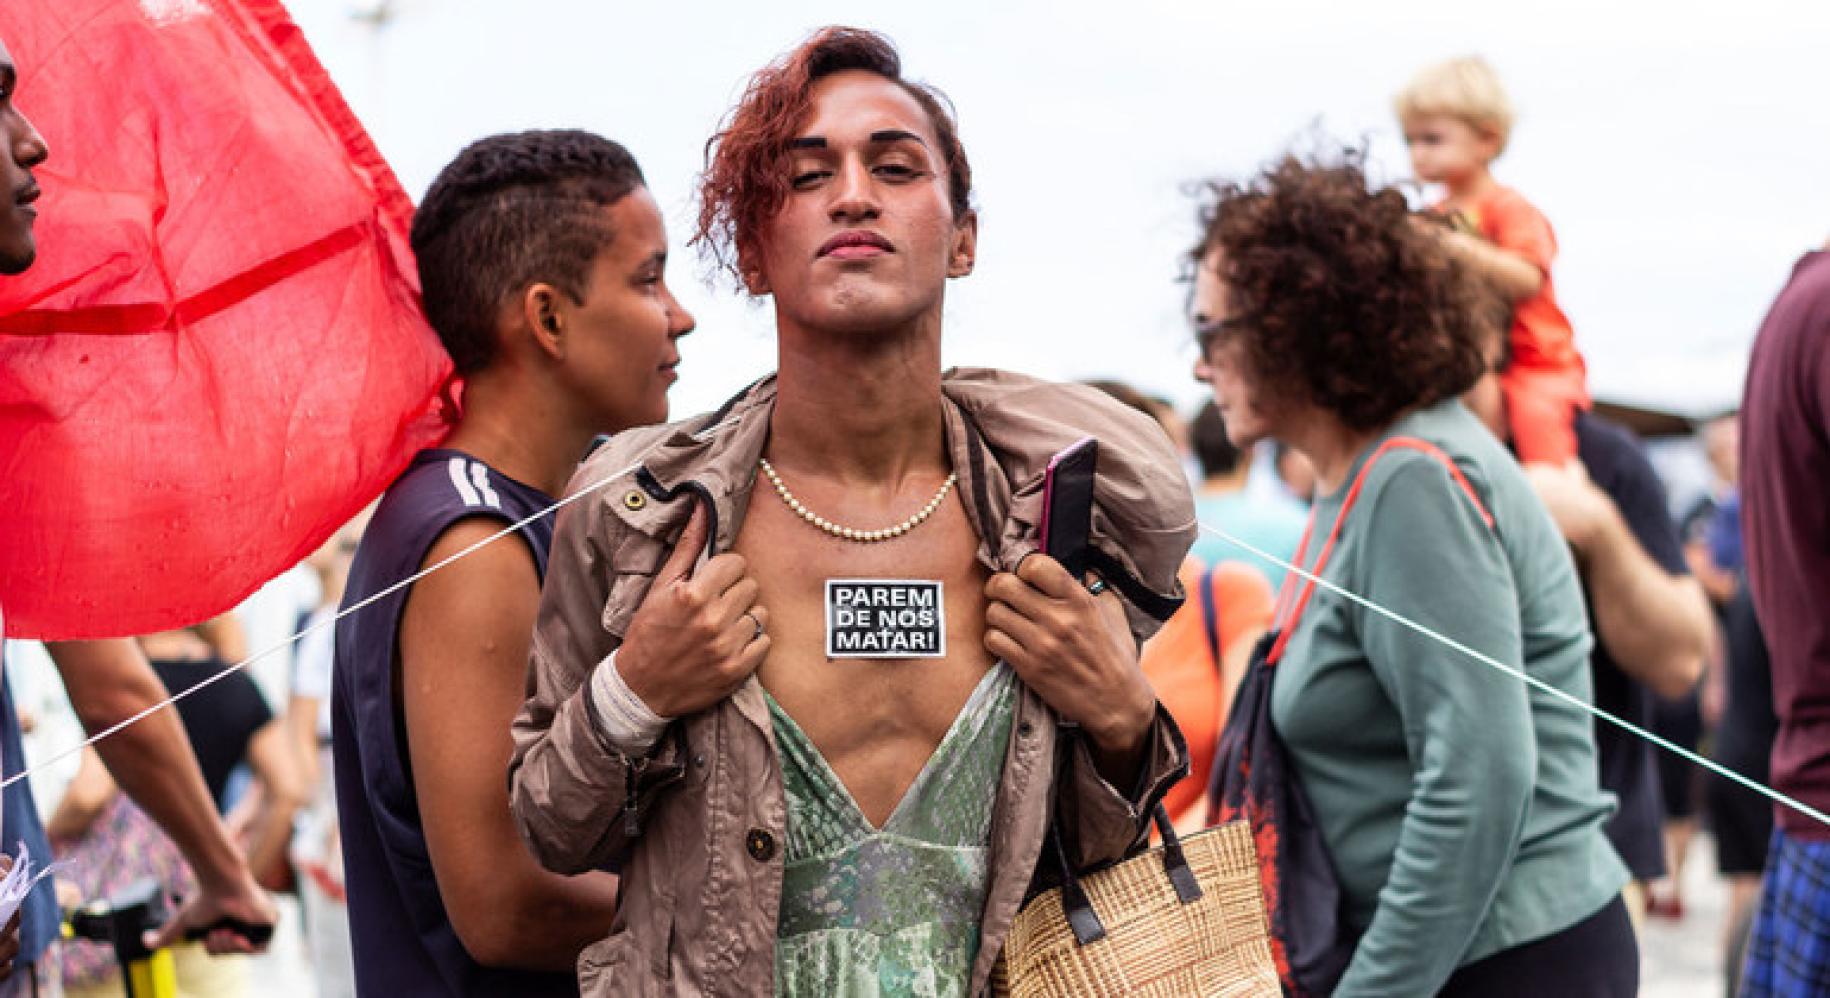 WellDonna Taiz Coelho defiende sus derechos en las calles de Río de Janeiro. En la pegatina que lleva en el pecho se puede leer "dejen de matarnos".